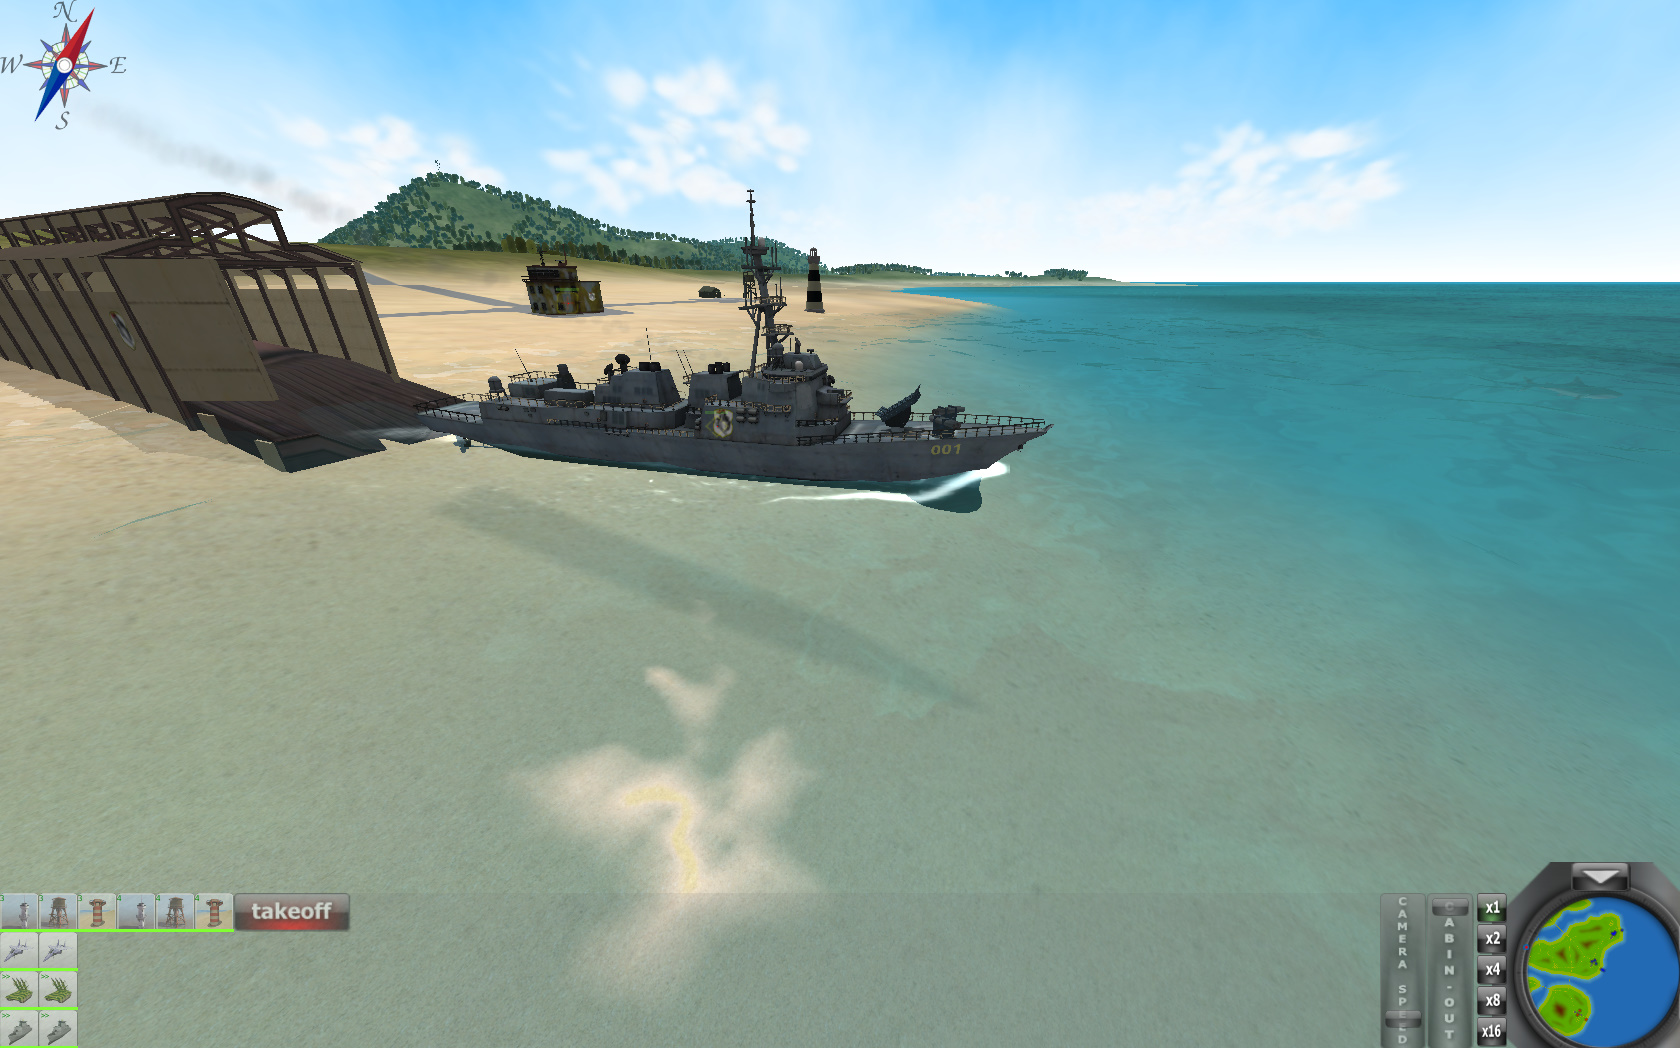 Tactics 2: War screenshot